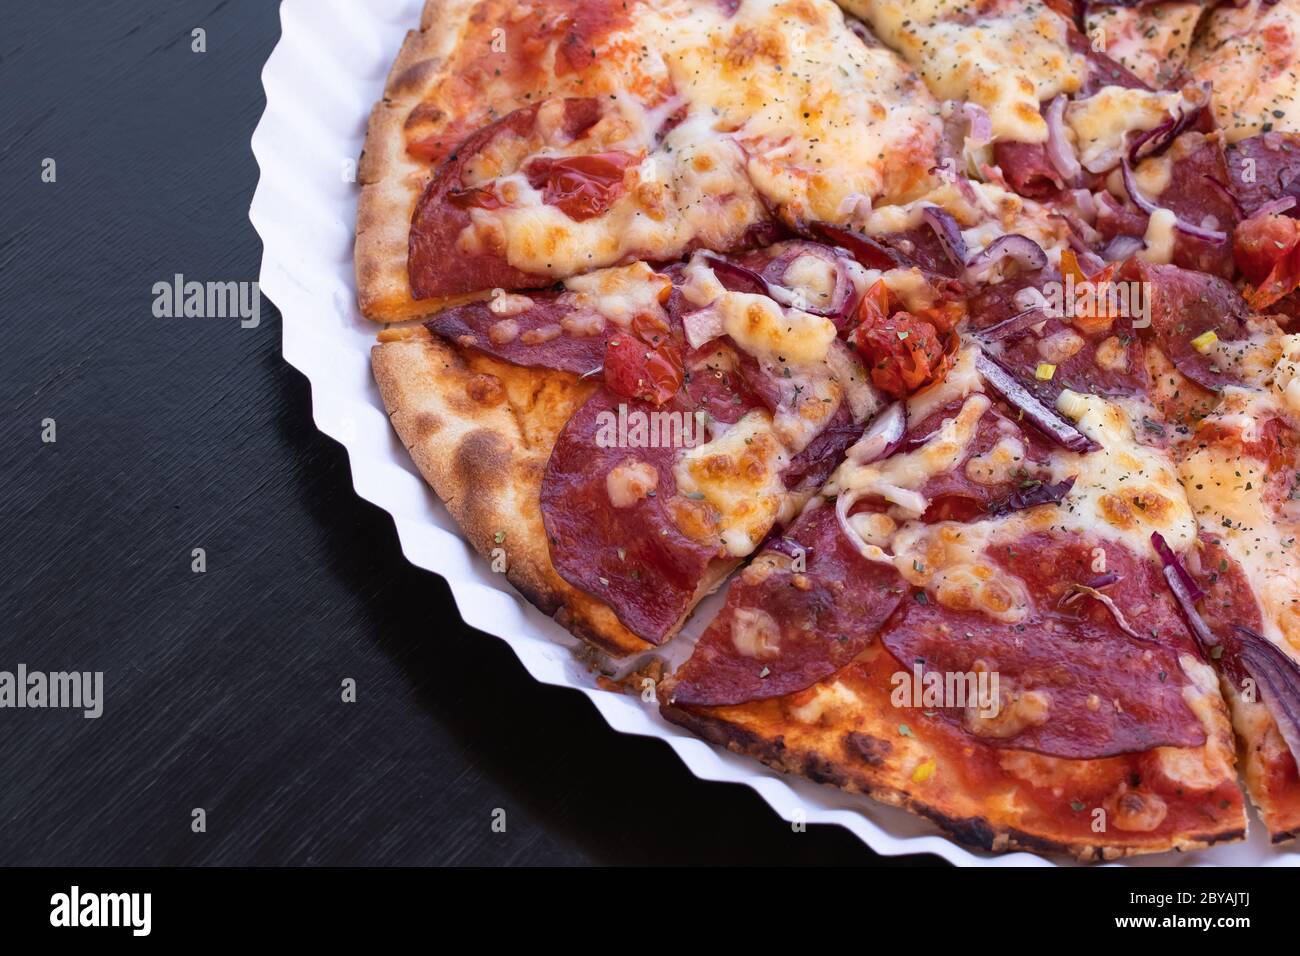 Tranches de pizza avec salami et fromage sur une assiette de papier. Table en bois noir. Copier l'espace. Emplacement vide pour le texte Banque D'Images